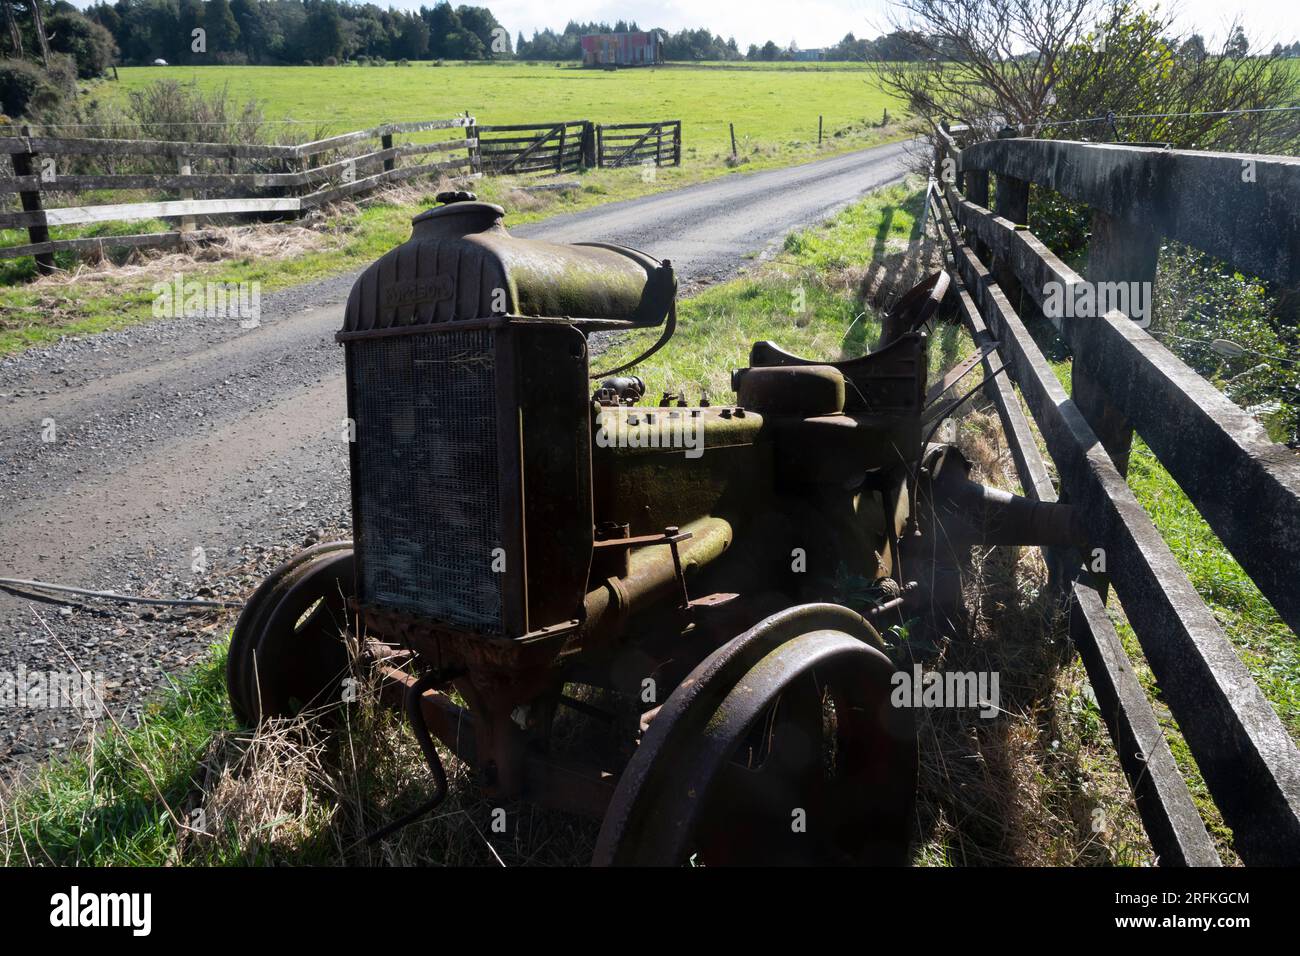 Resti del trattore Fordson d'epoca accanto alla recinzione, Taranaki, North Island, nuova Zelanda Foto Stock